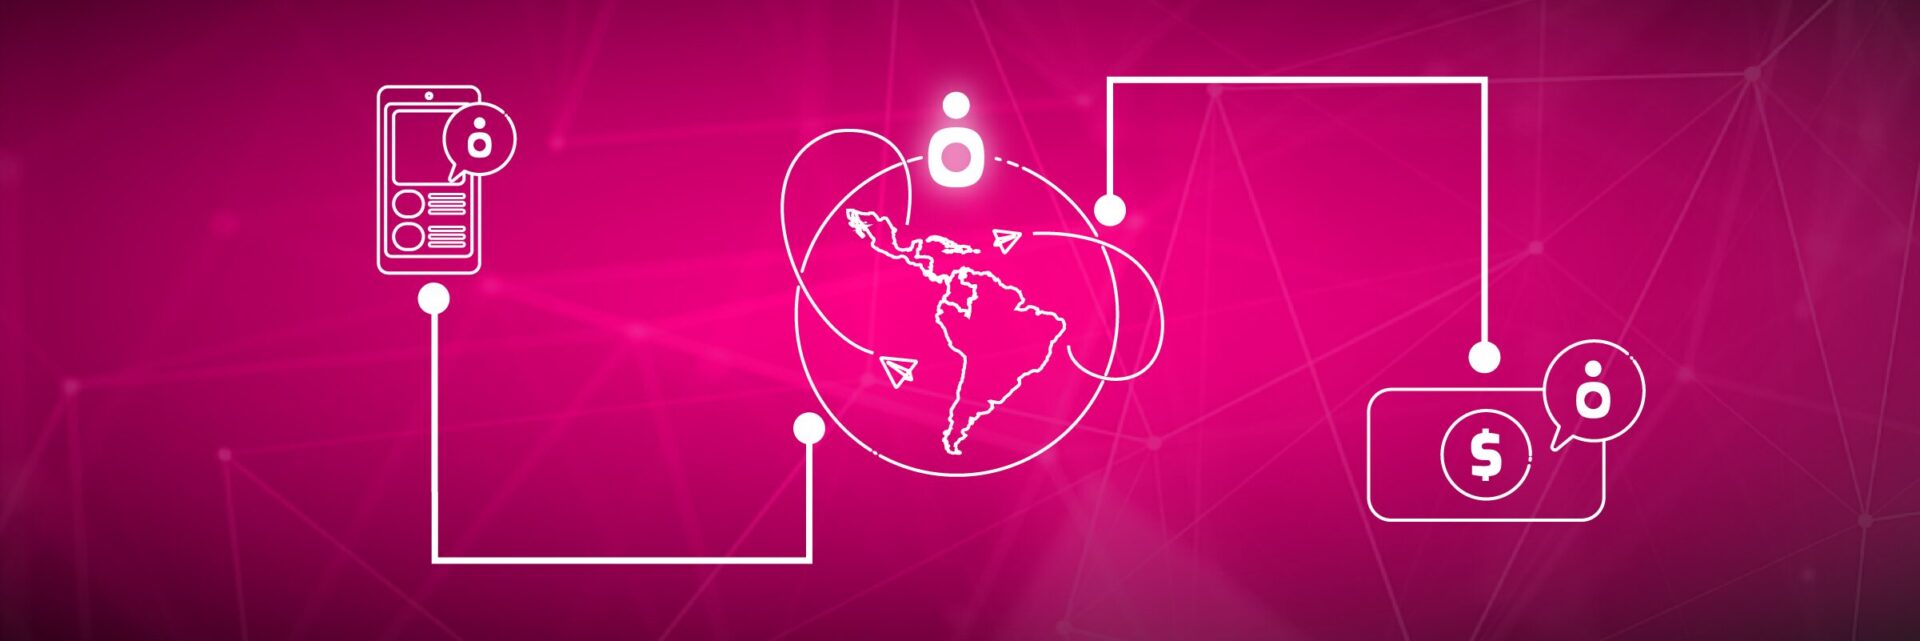 Un fondo rosa con la imagen de un mapa mundial, retratando el concepto de cambiando dentro de la industria fintech.